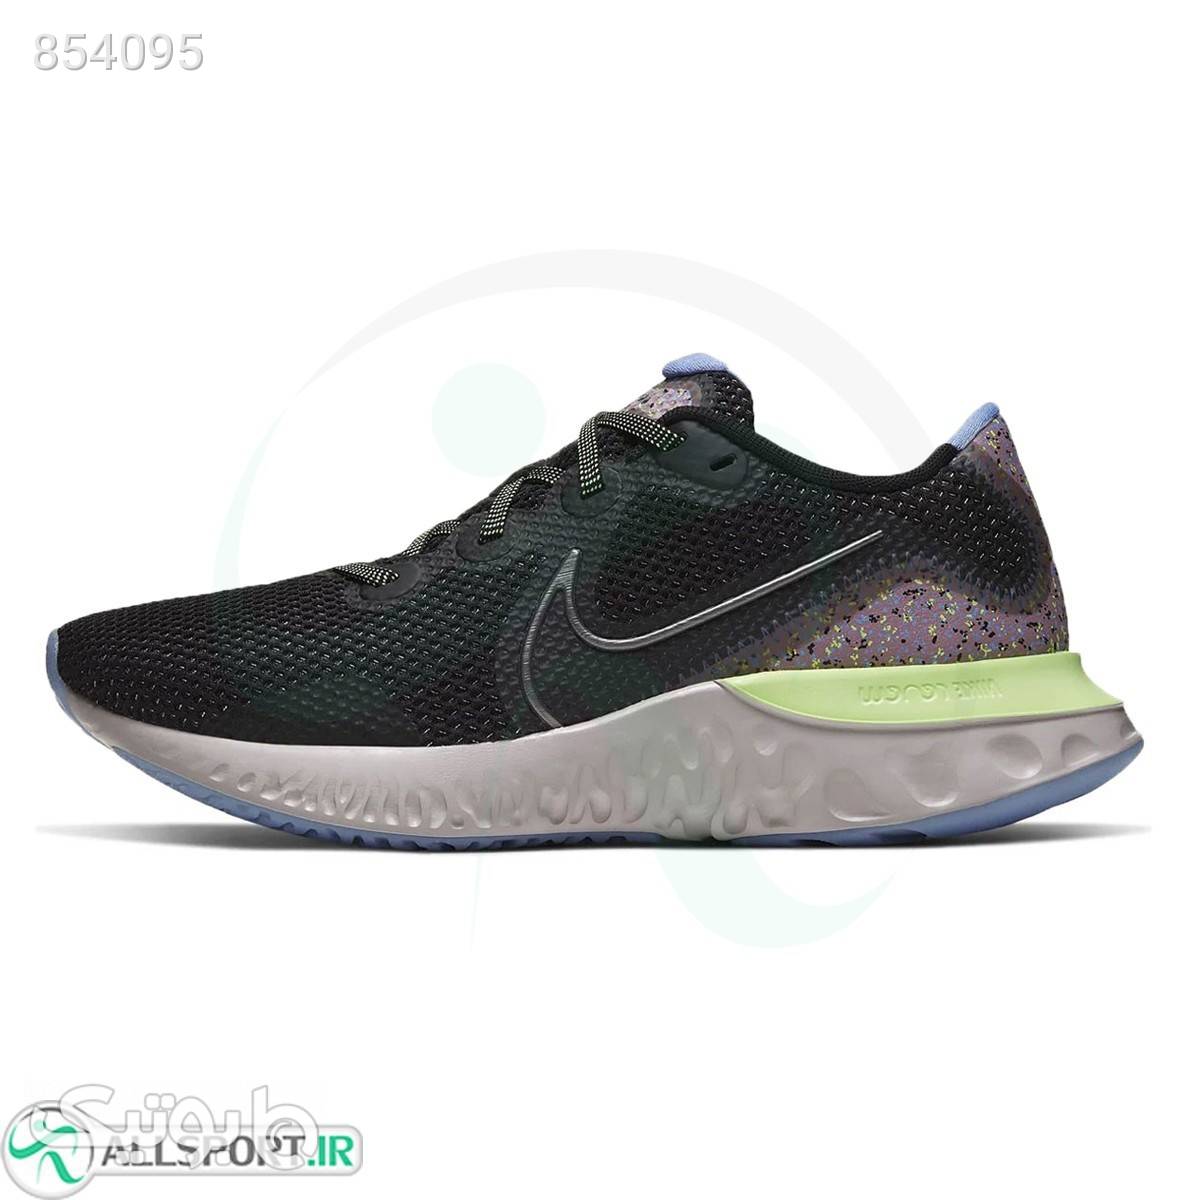 کتانی رانینگ مردانه نایک Nike Renew CT3515001